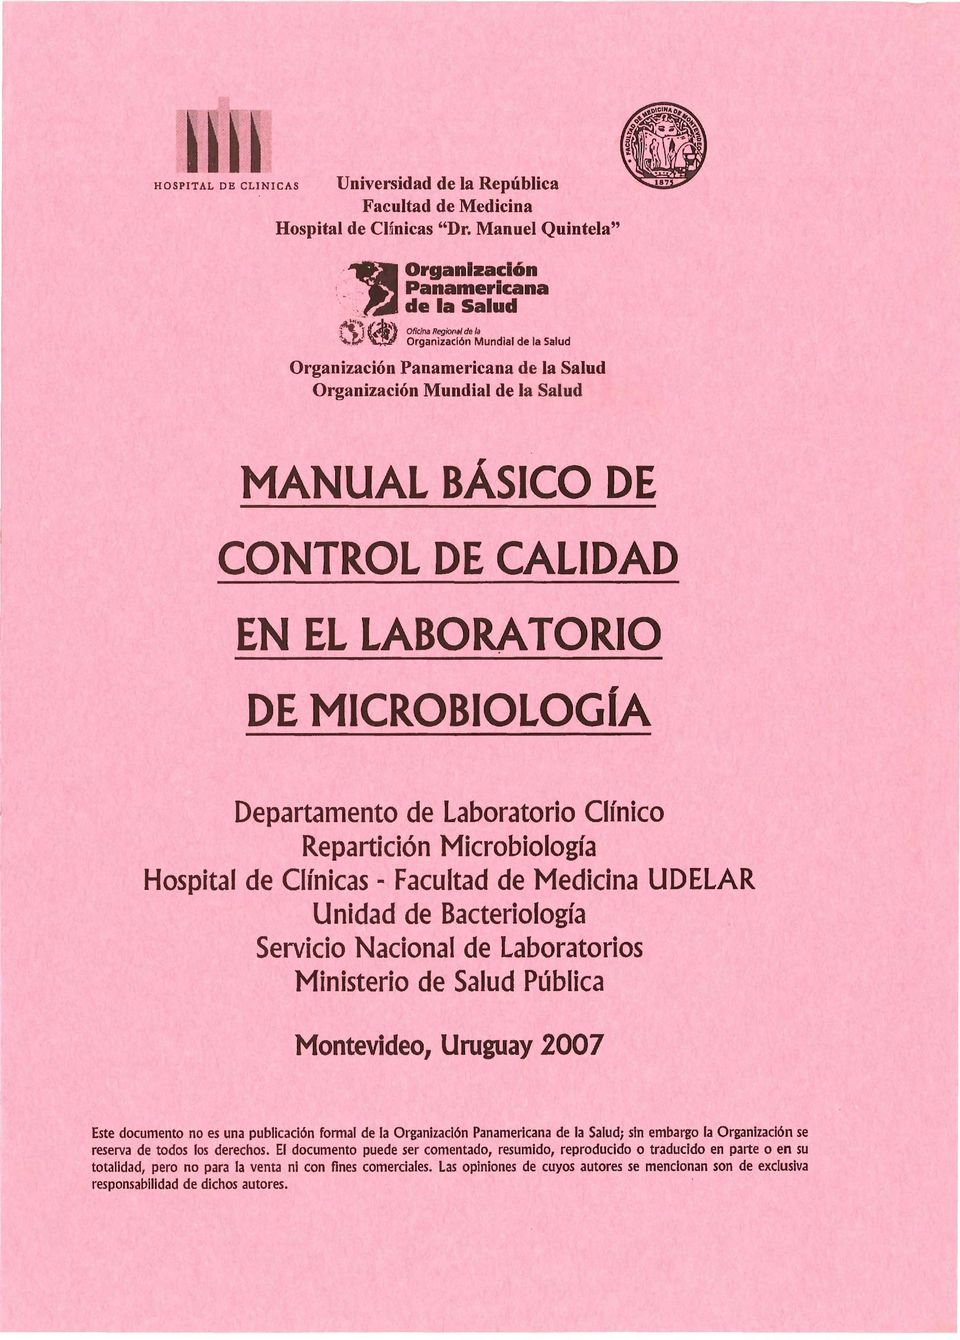 .. Organización Mundial de la Salud Organización Panamericana de la Salud Organización Mundial de la Salud MANUAL BÁSICO DE CONTROL DE CALIDAD DE MICROBIOLOGÍA Departamento de Laboratorio Clínico